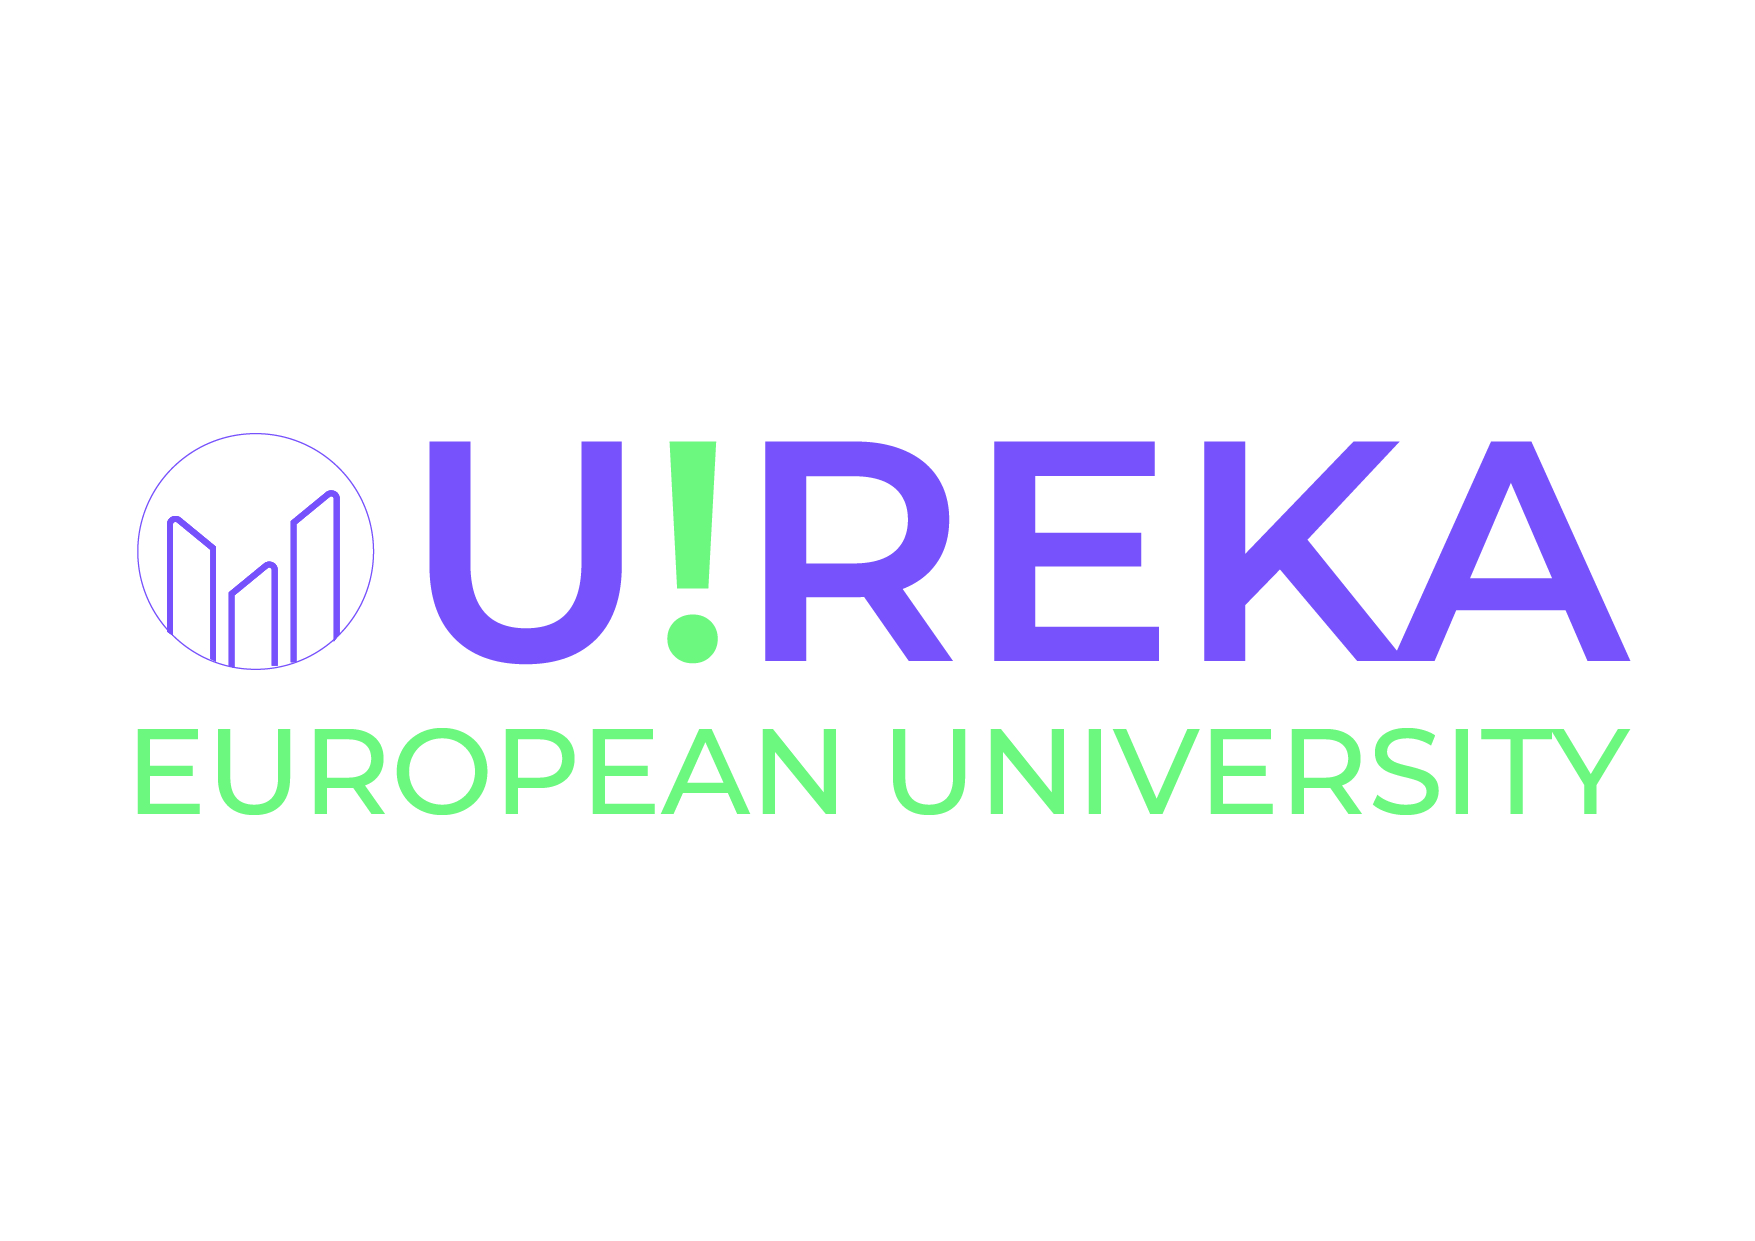 U!REKA European University